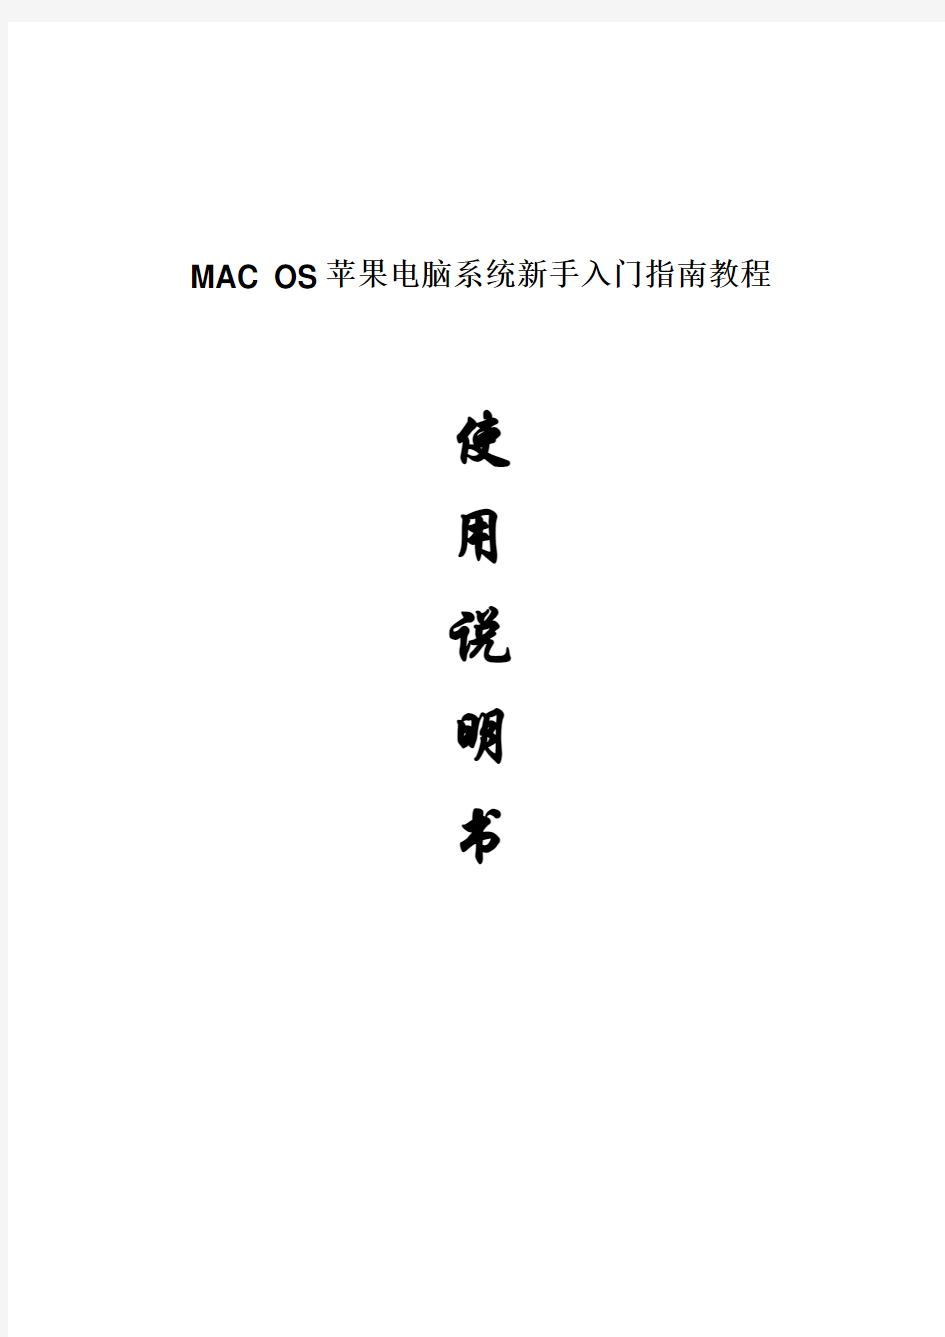 2017年MAC OS苹果电脑系统新手入门指南教程使用说明(word版本)